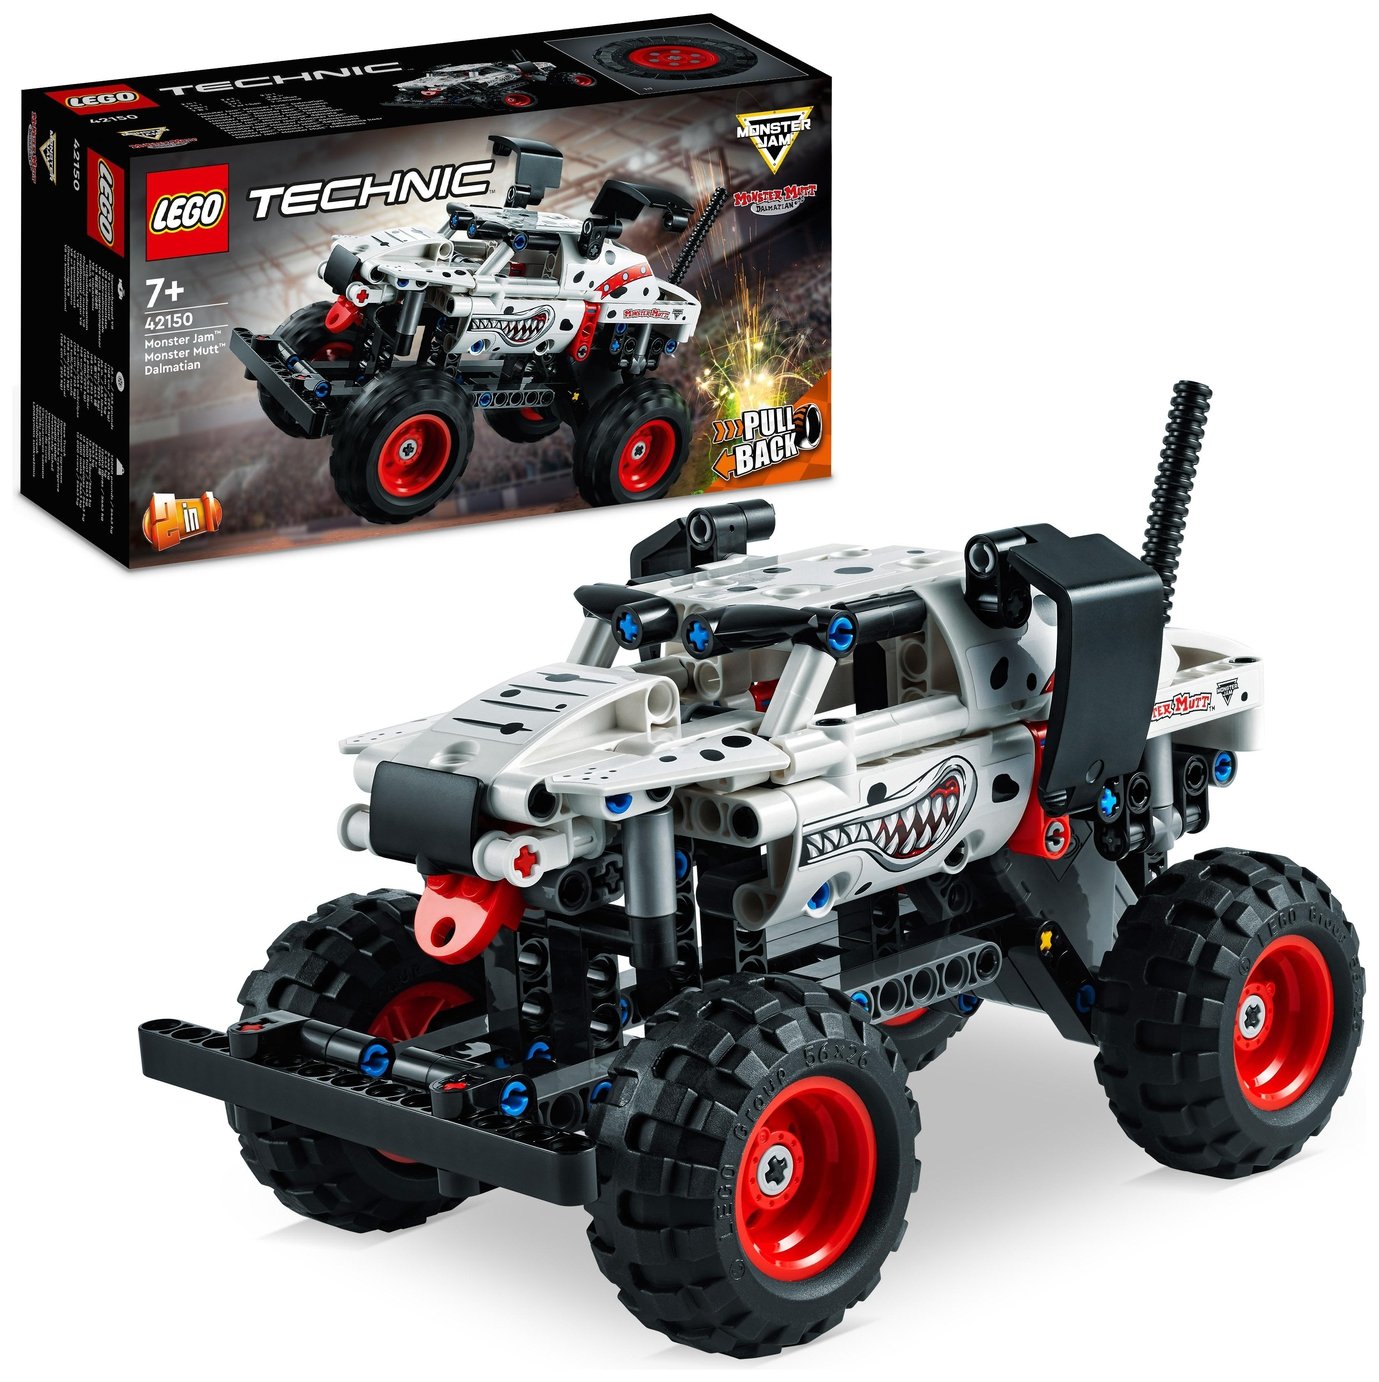 LEGO Technic Monster Jam Monster Mutt Dalmatian Set 42150 review